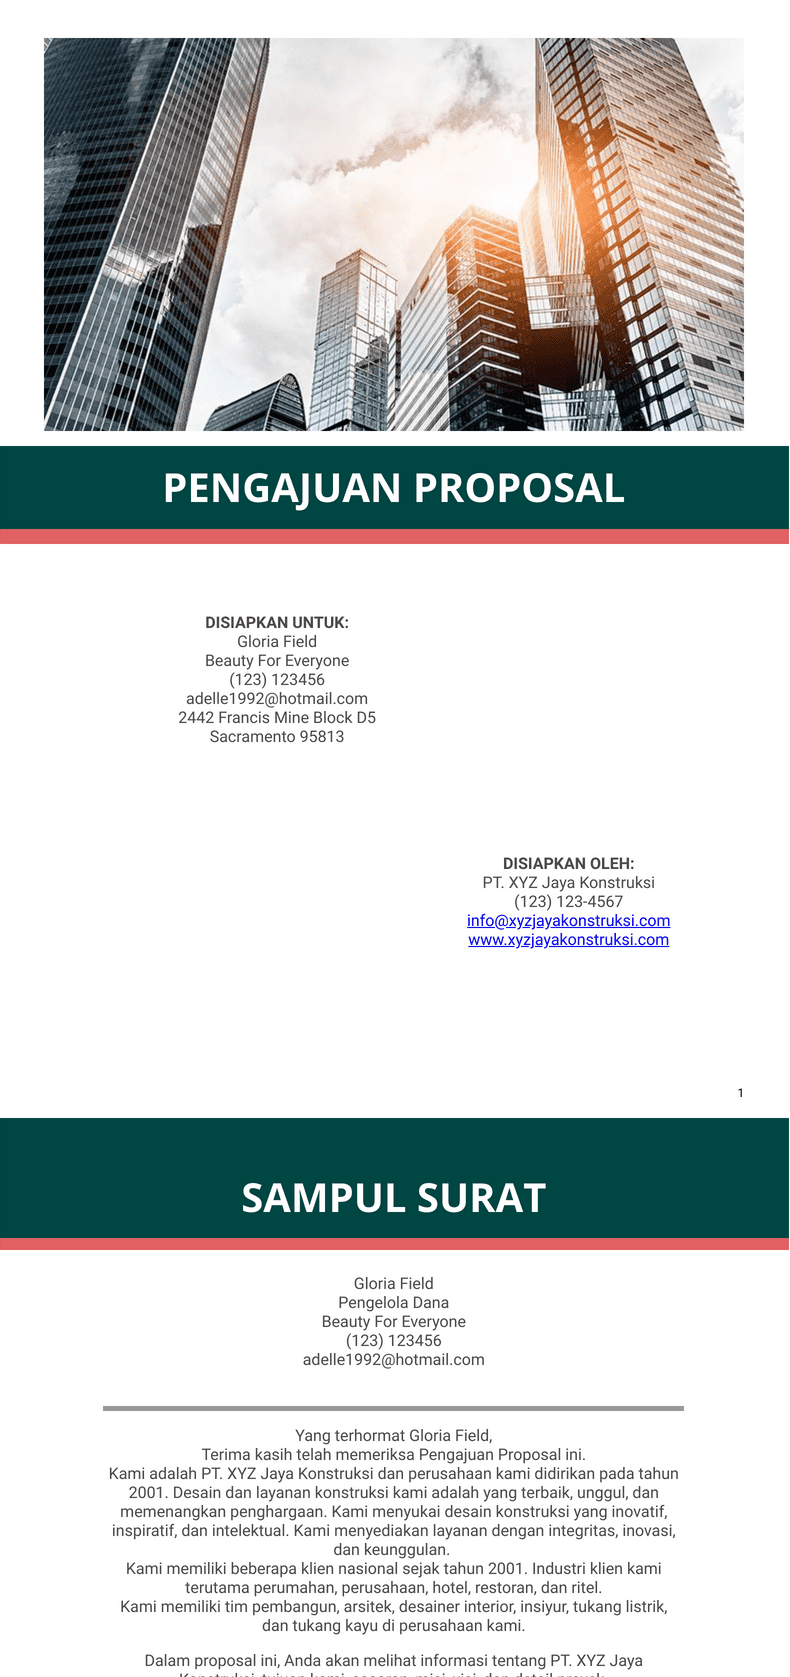 PDF Templates: Pengajuan Proposal